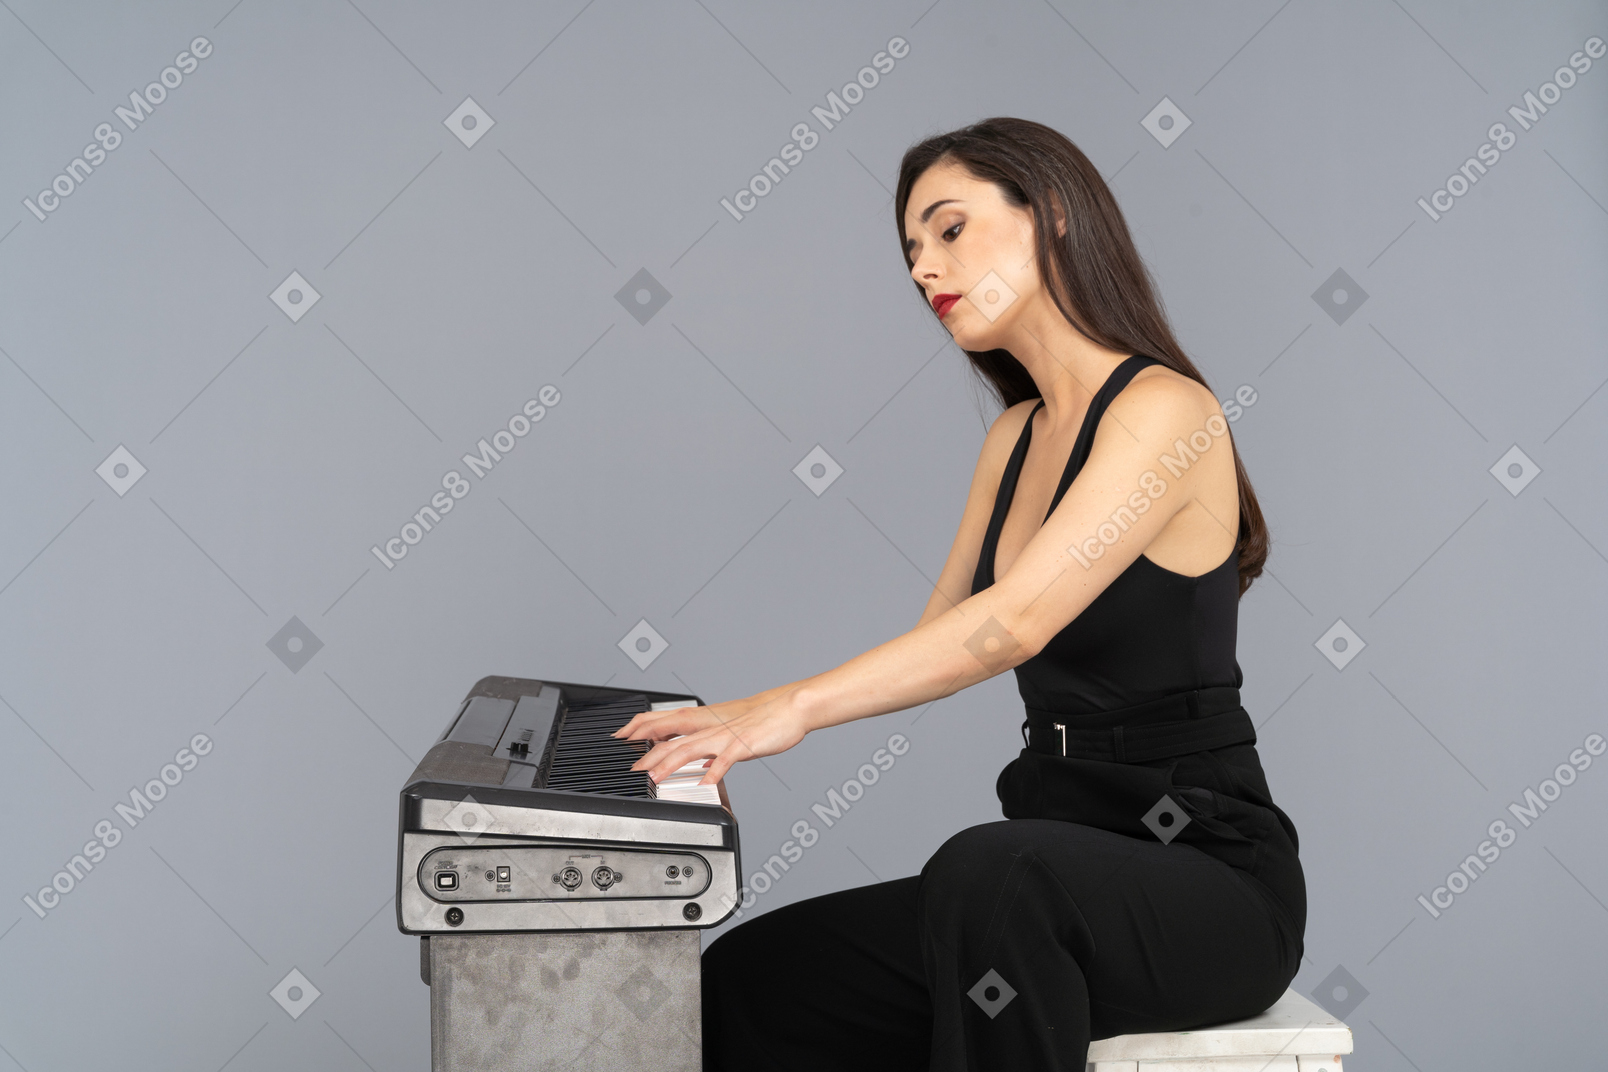 검은 양복에 앉아 피아노를 연주하는 젊은 아가씨의 측면보기